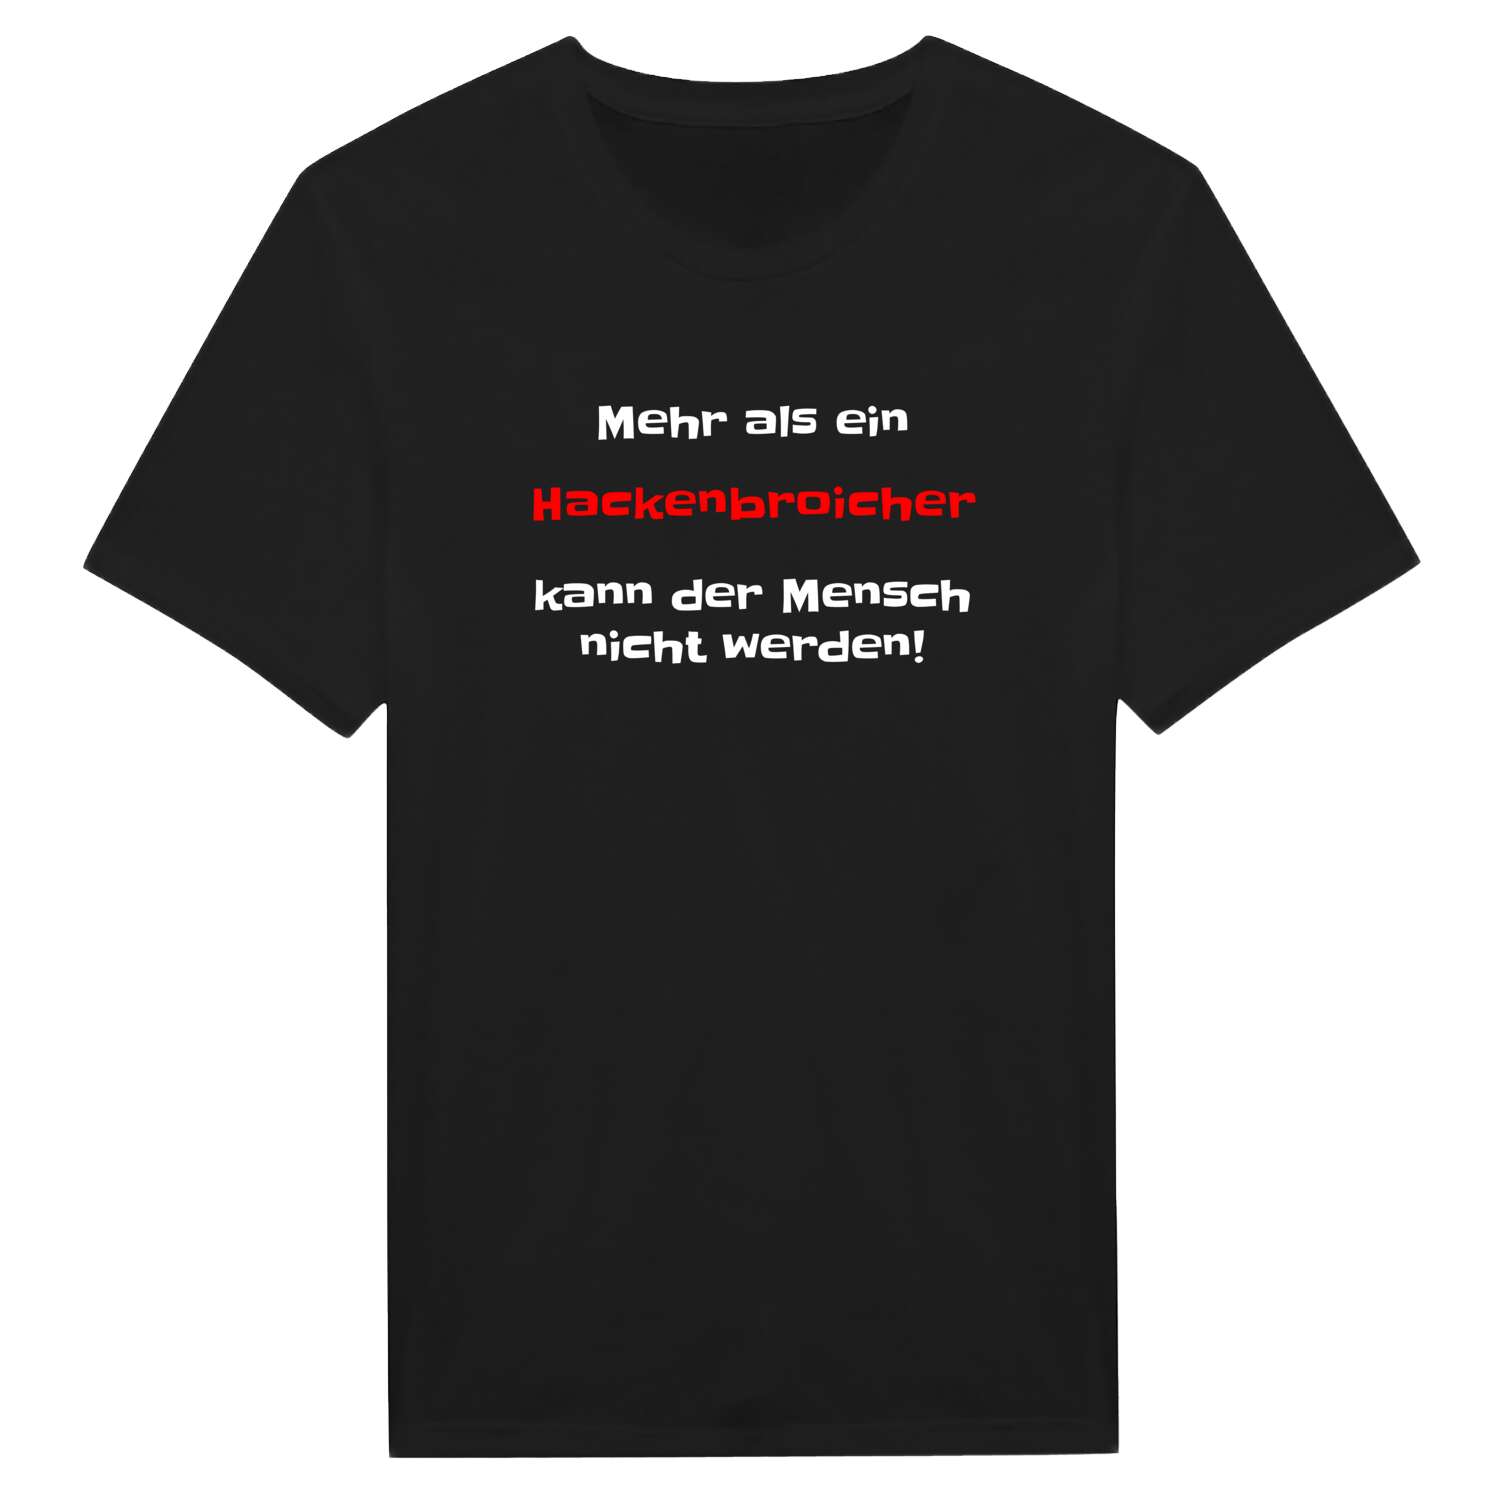 Hackenbroich T-Shirt »Mehr als ein«